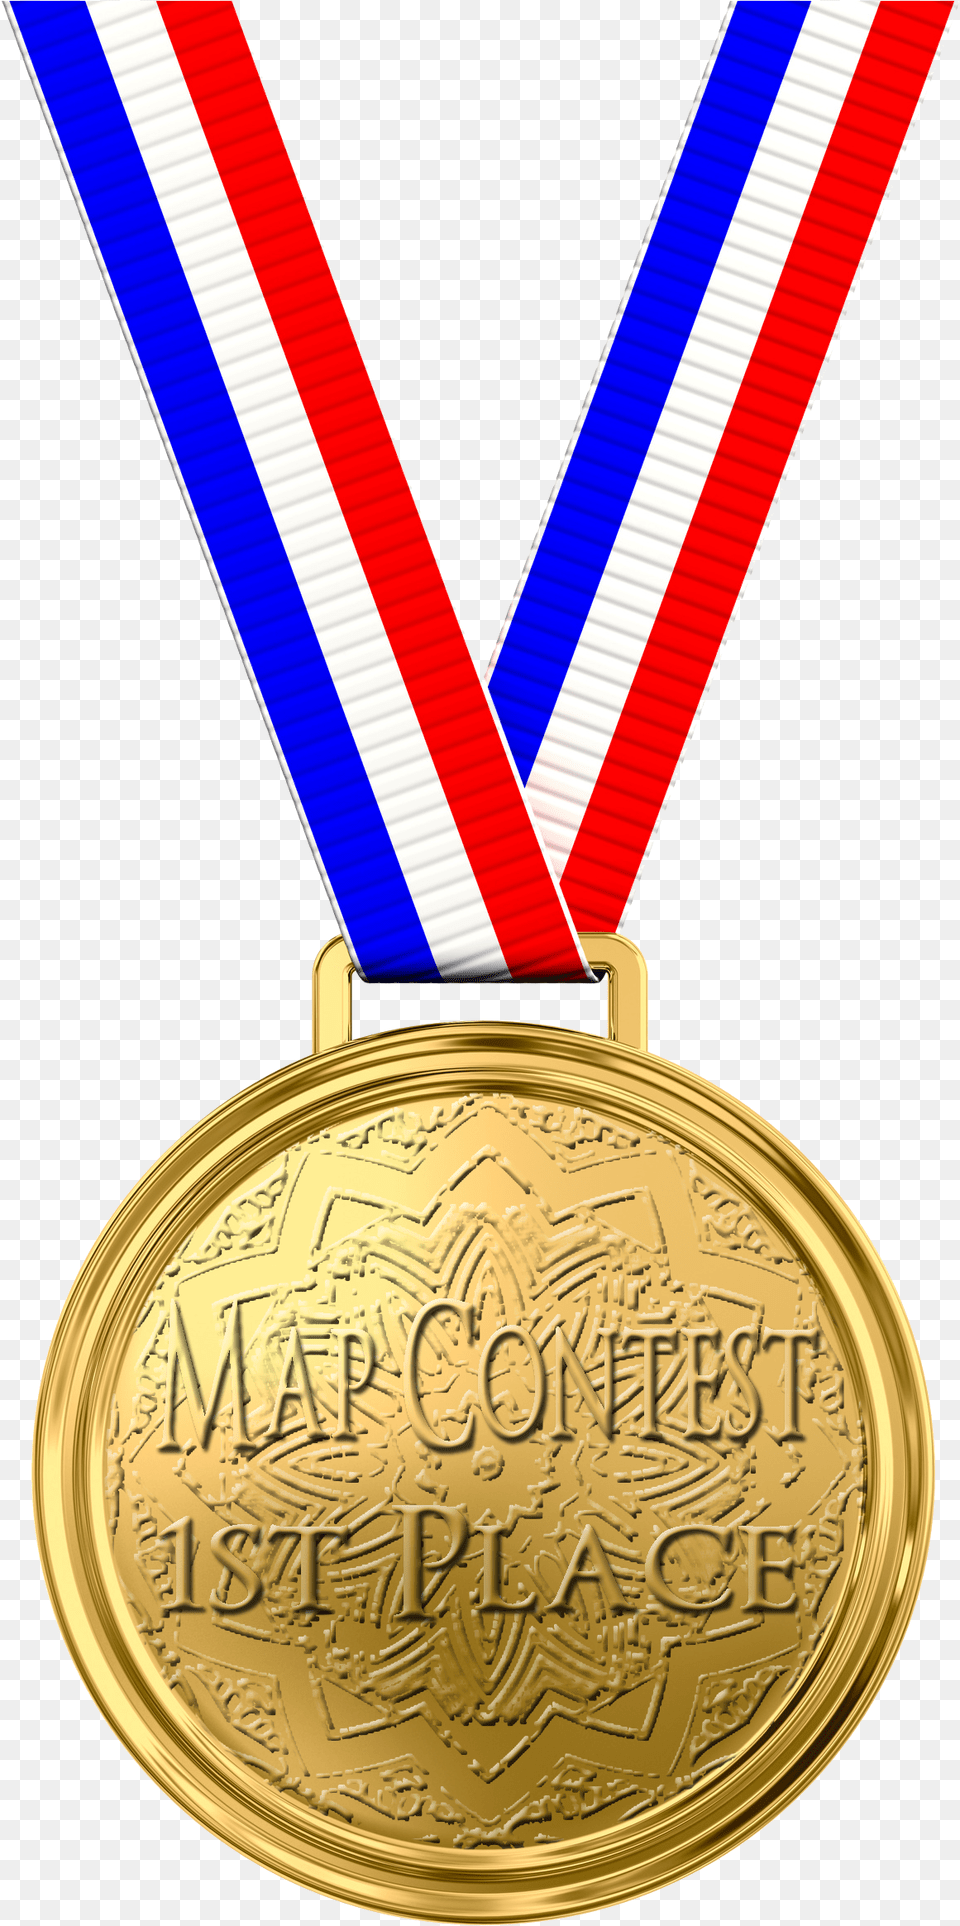 1st Place Medal Gold Medal Transparent Background, Gold Medal, Trophy Free Png Download